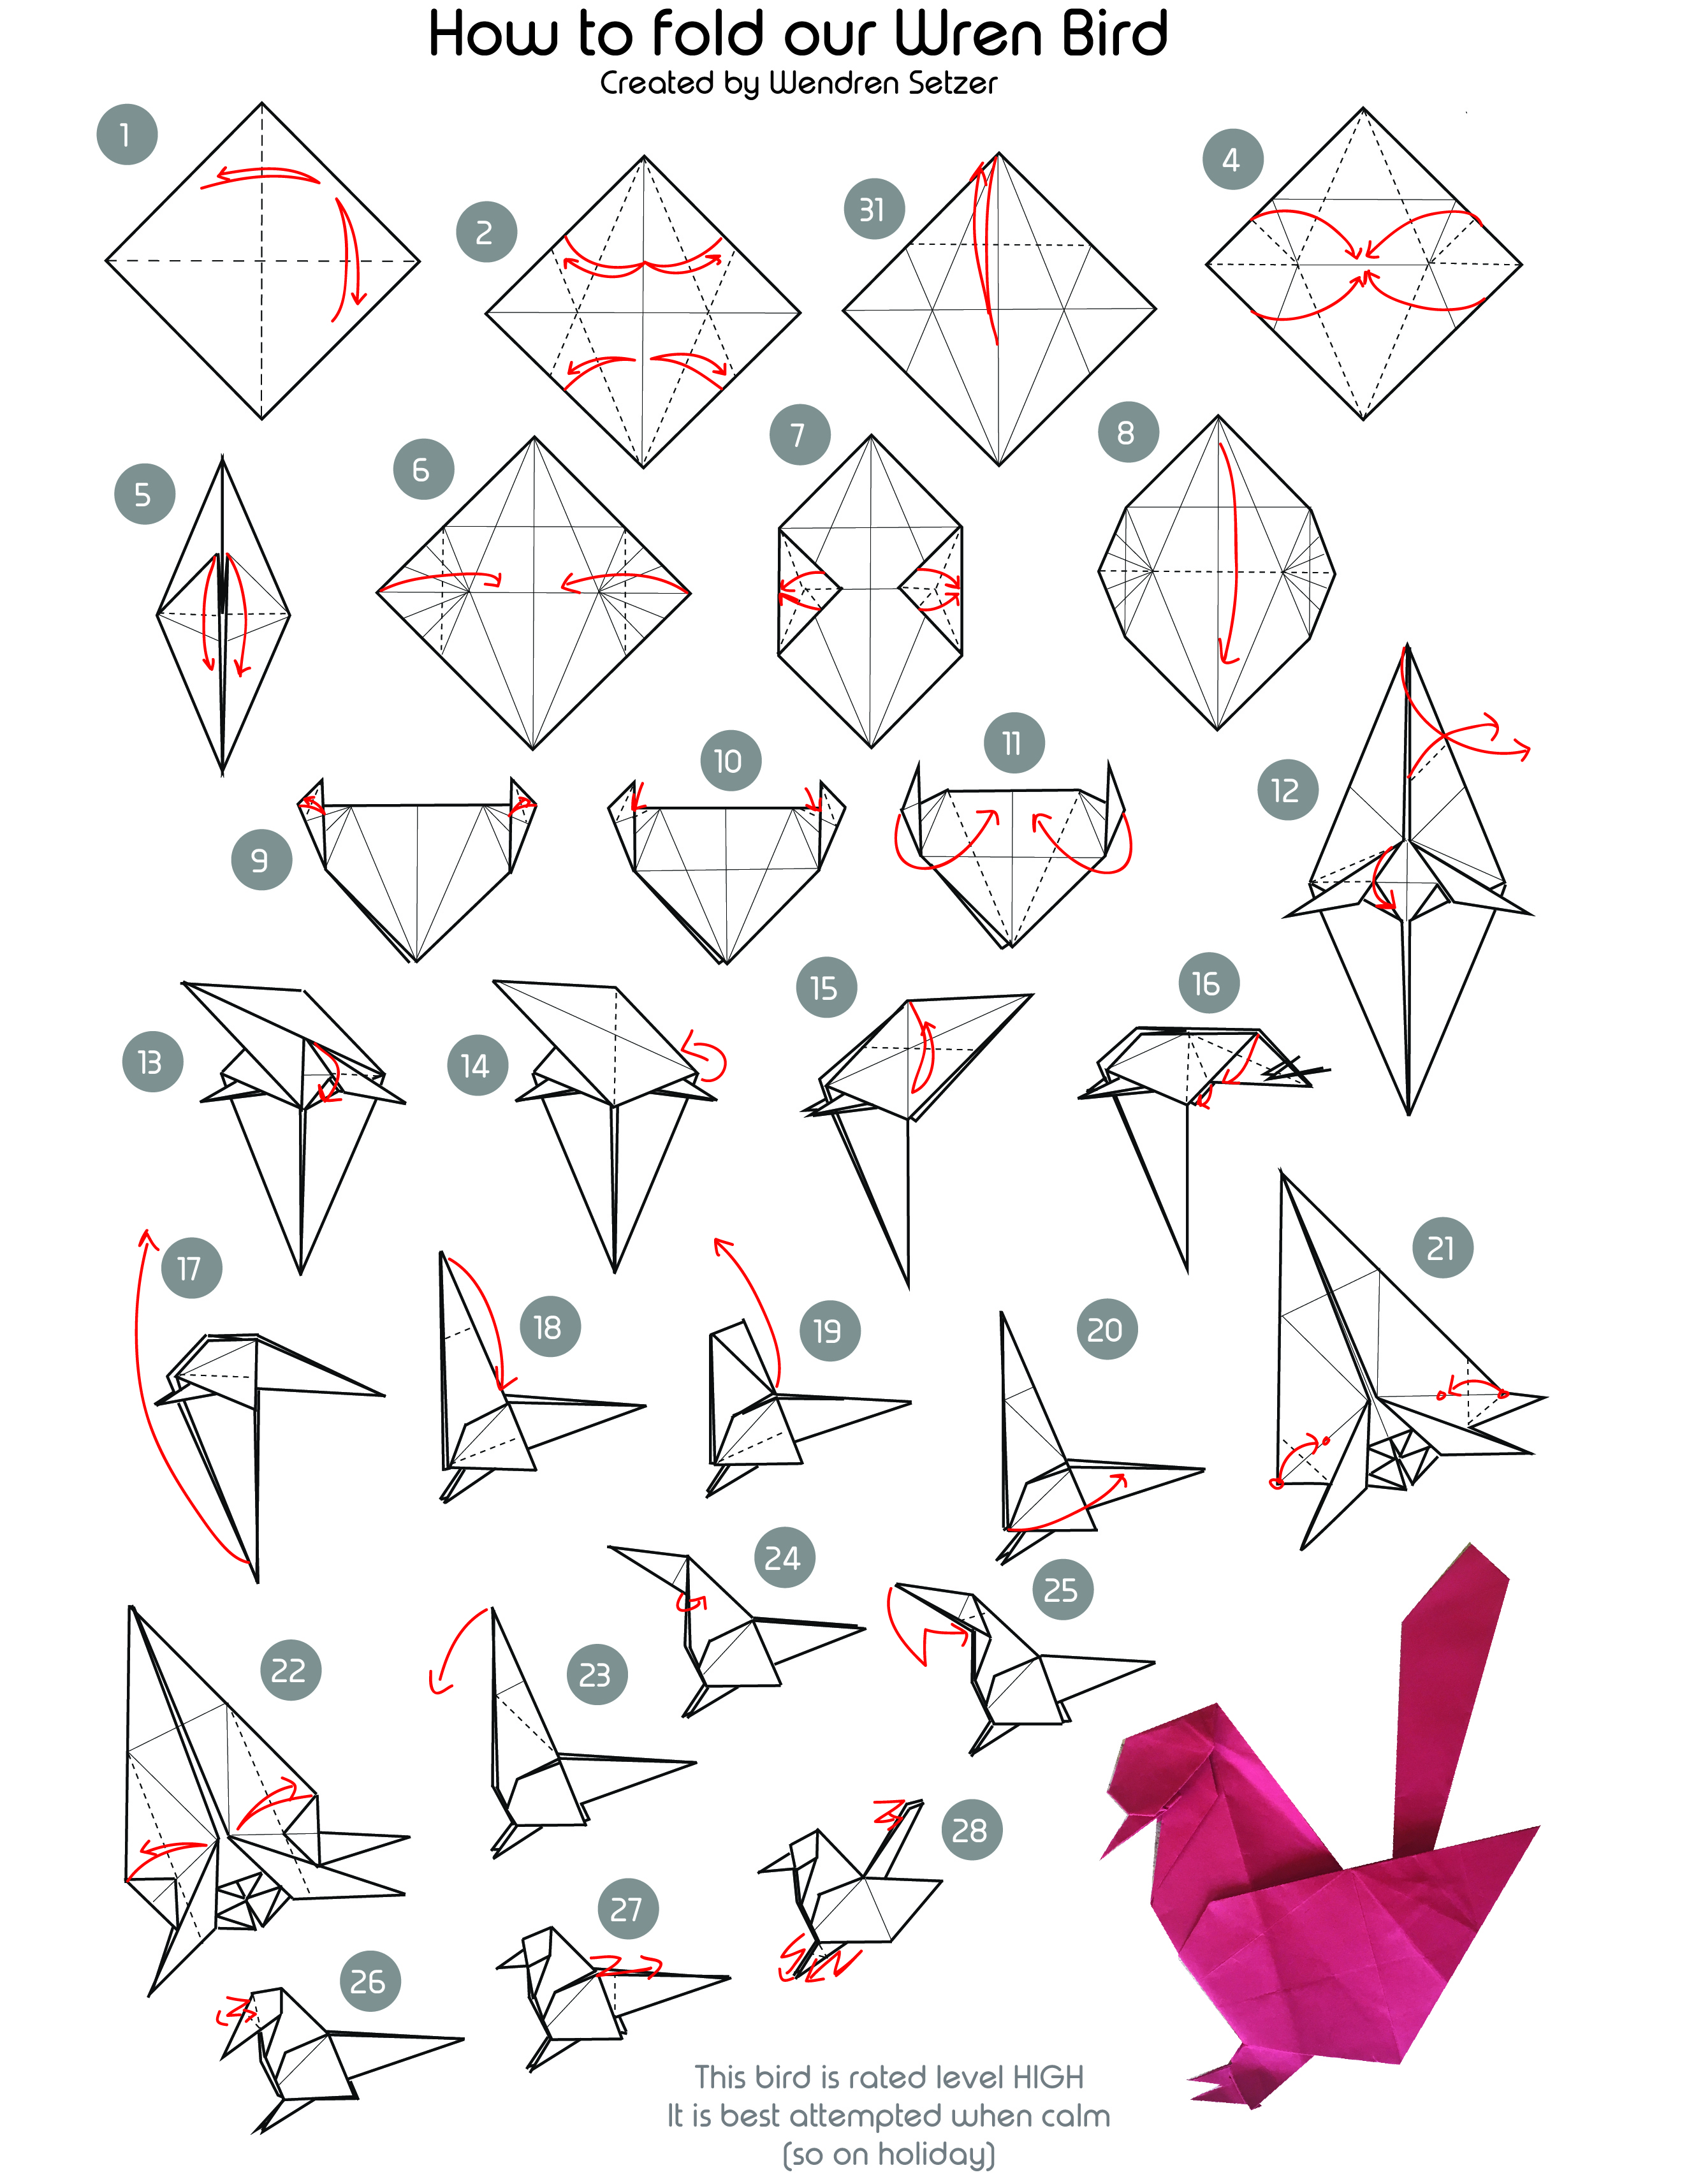 Wren Bird Origami The Wren Design